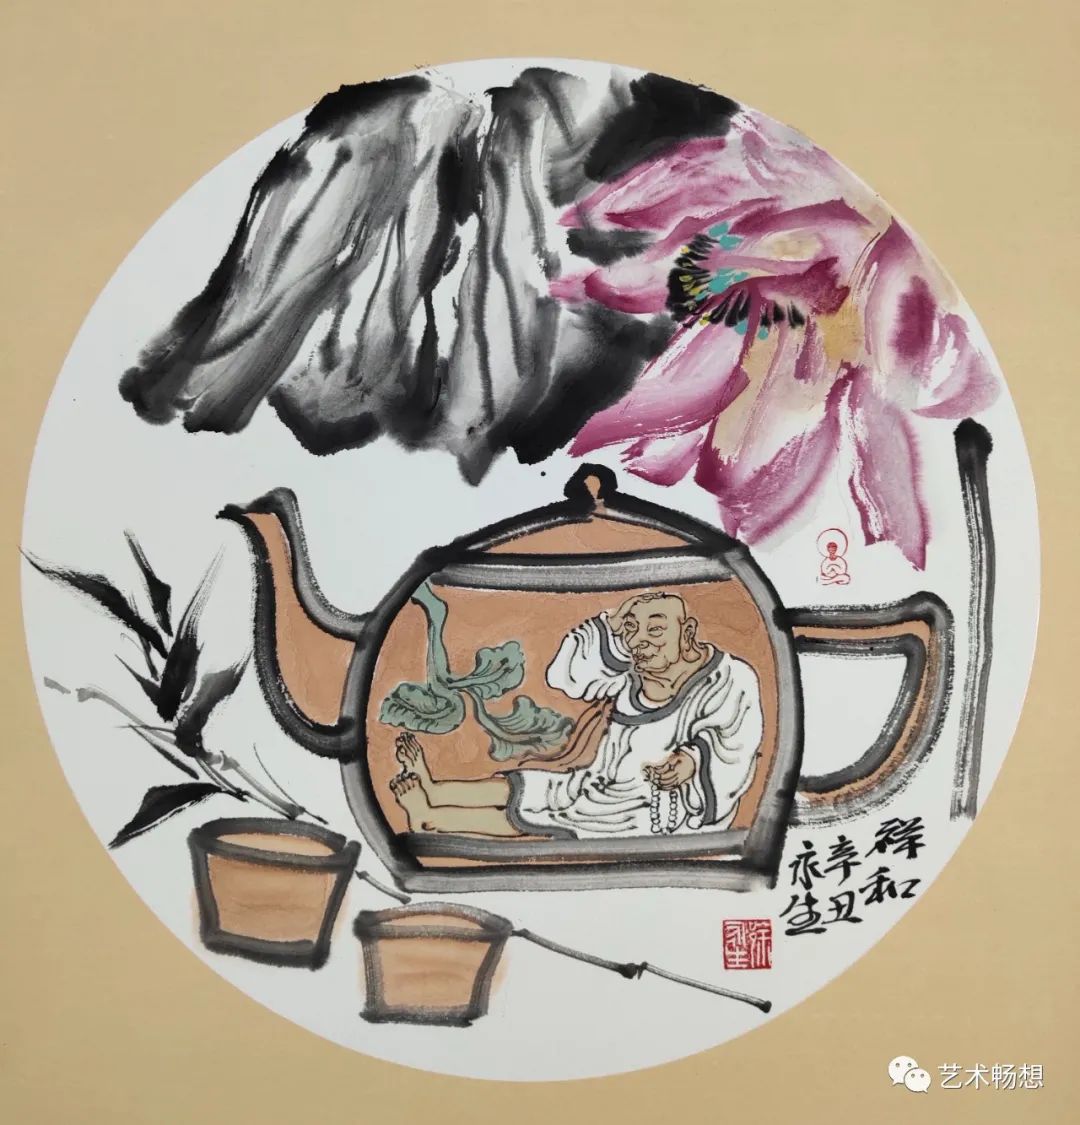 著名画家徐永生受邀参展，“盛世荣华·中国画全国名家邀请展”将于6月1日在济南开幕